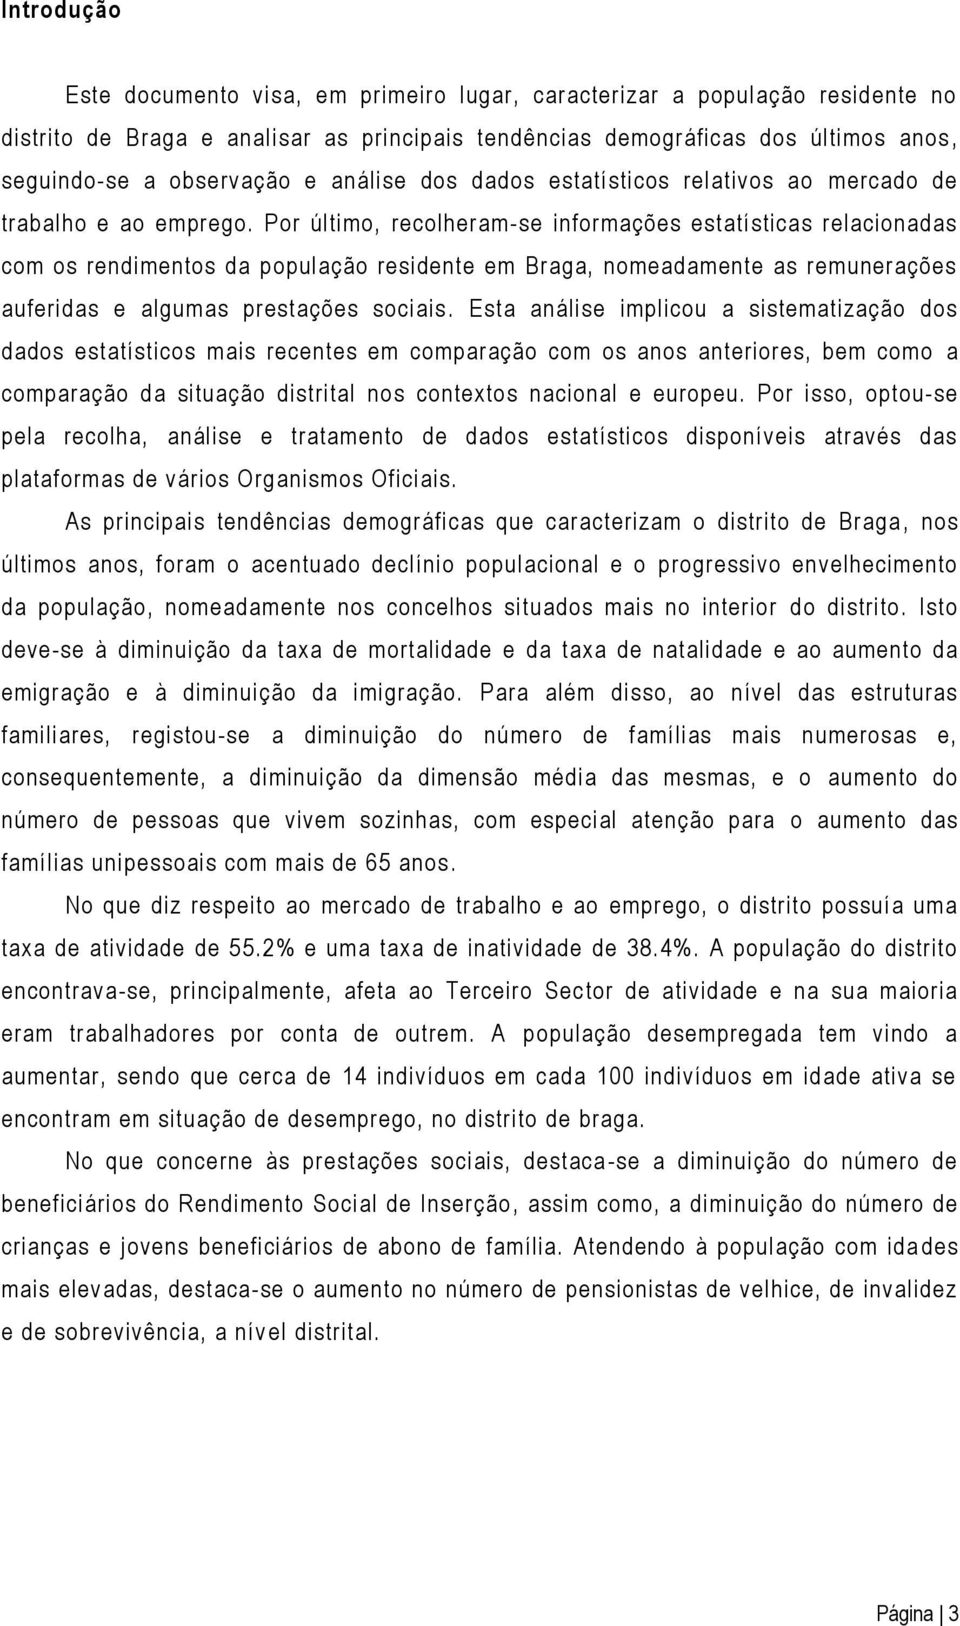 Por último, recolheram-se informações estatísticas relacionadas com os rendimentos da população residente em Braga, nomeadamente as remunerações auferidas e algumas prestações sociais.